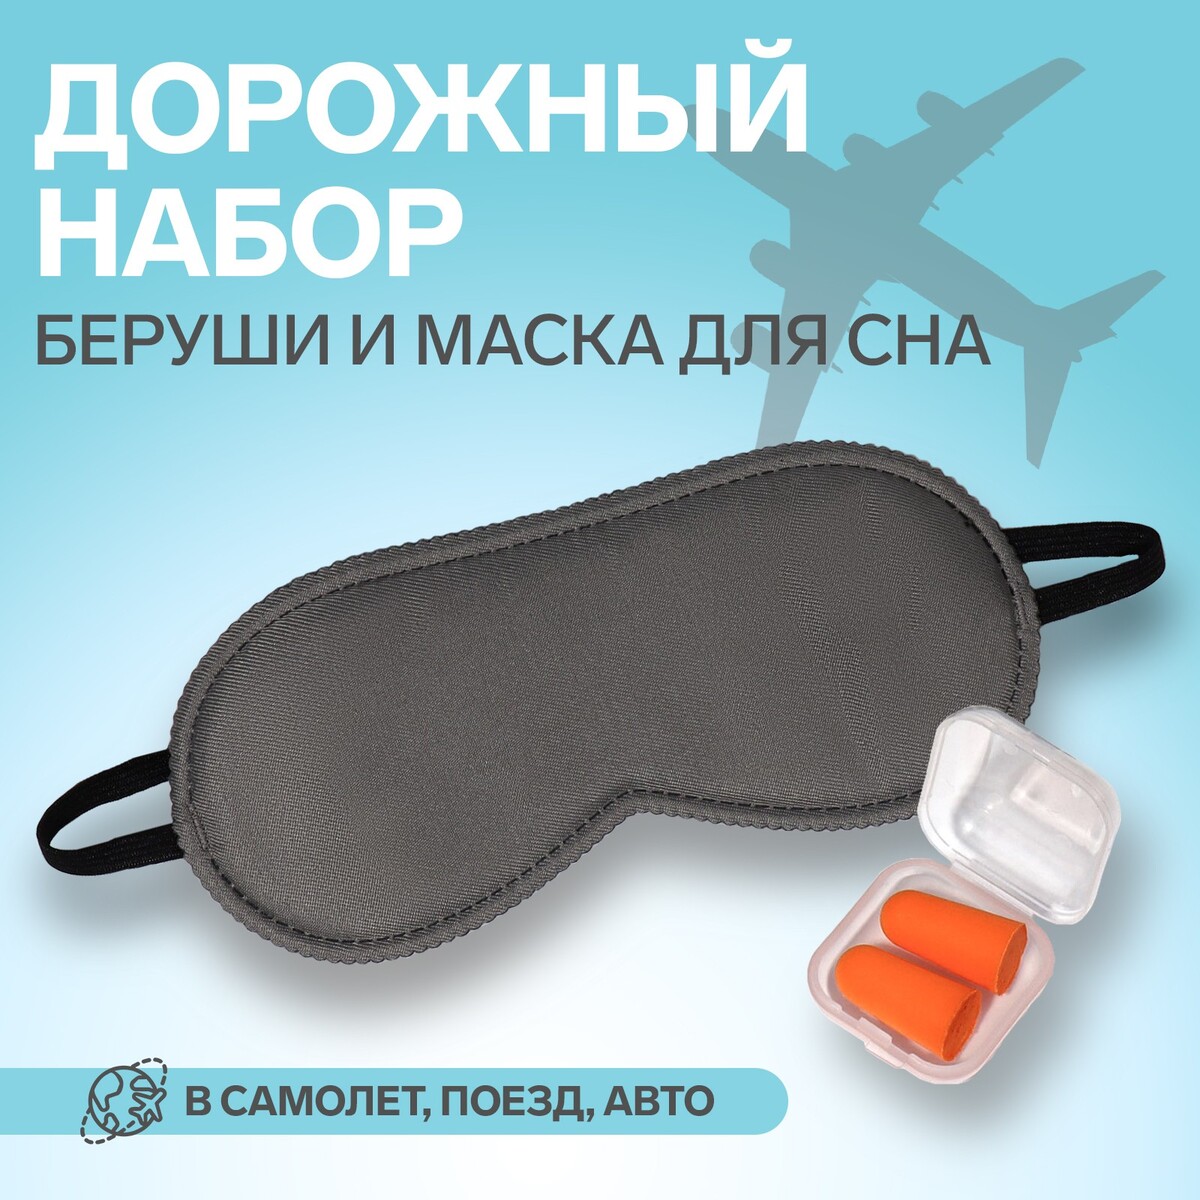 Набор туристический: маска для сна, беруши в футляре набор для плавания взрослый onlitop swim шапочка беруши зажим для носа мешок